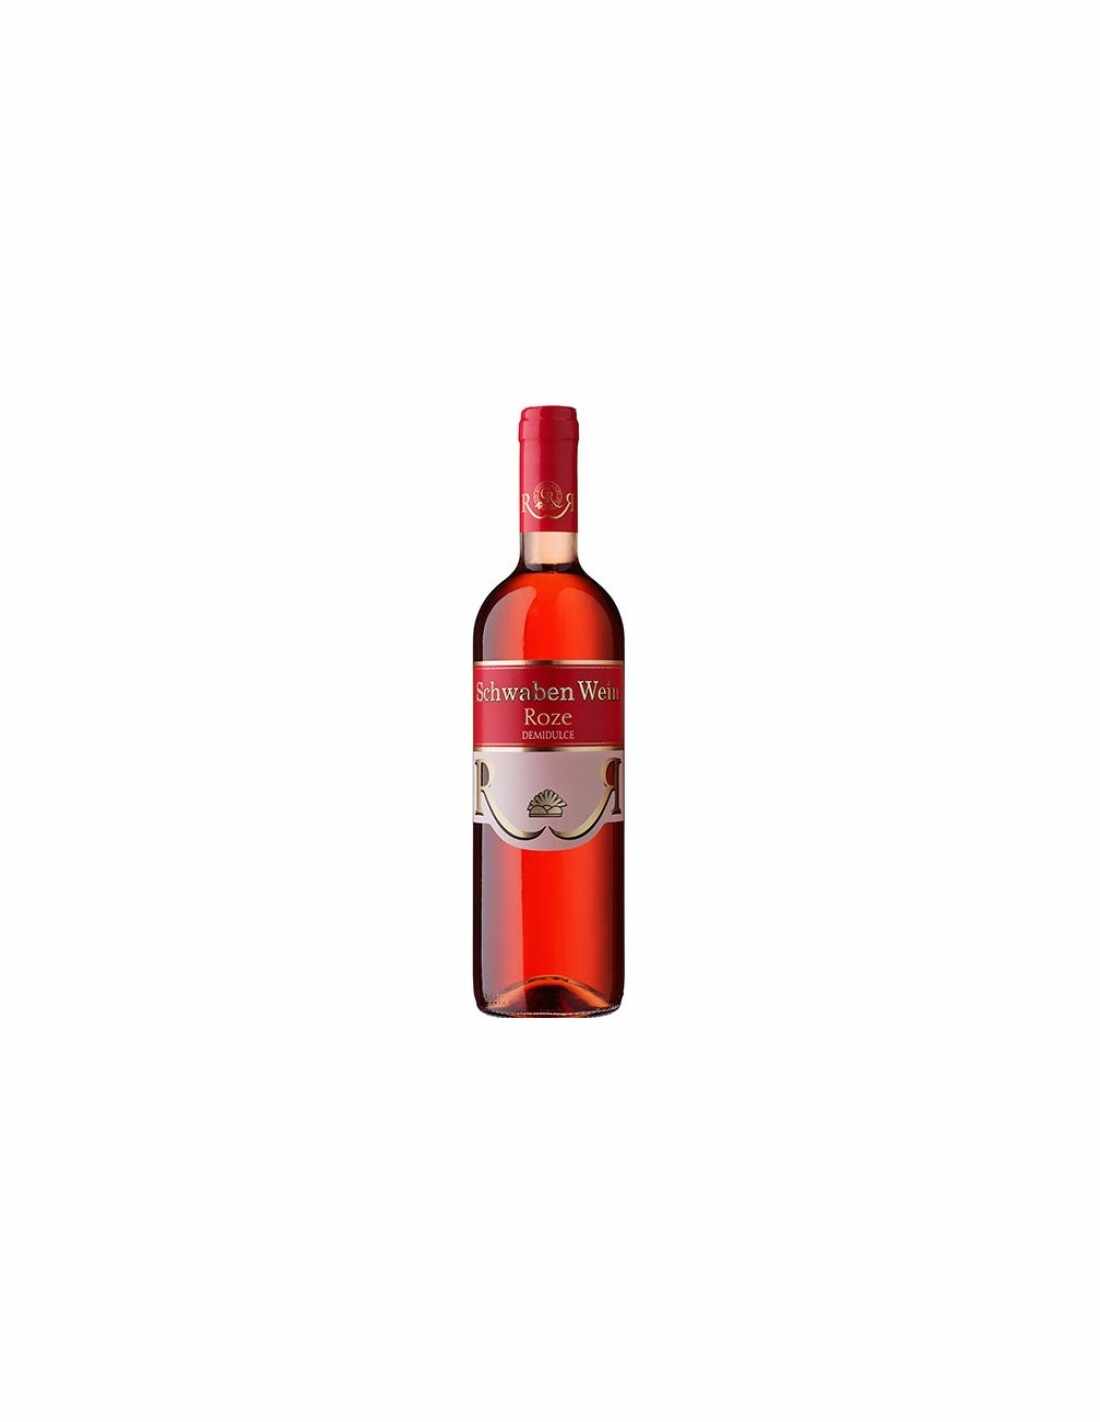 Vin roze demidulce, Cupaj, Schwaben Wein Recas, 0.75L, 12.5% alc., Romania